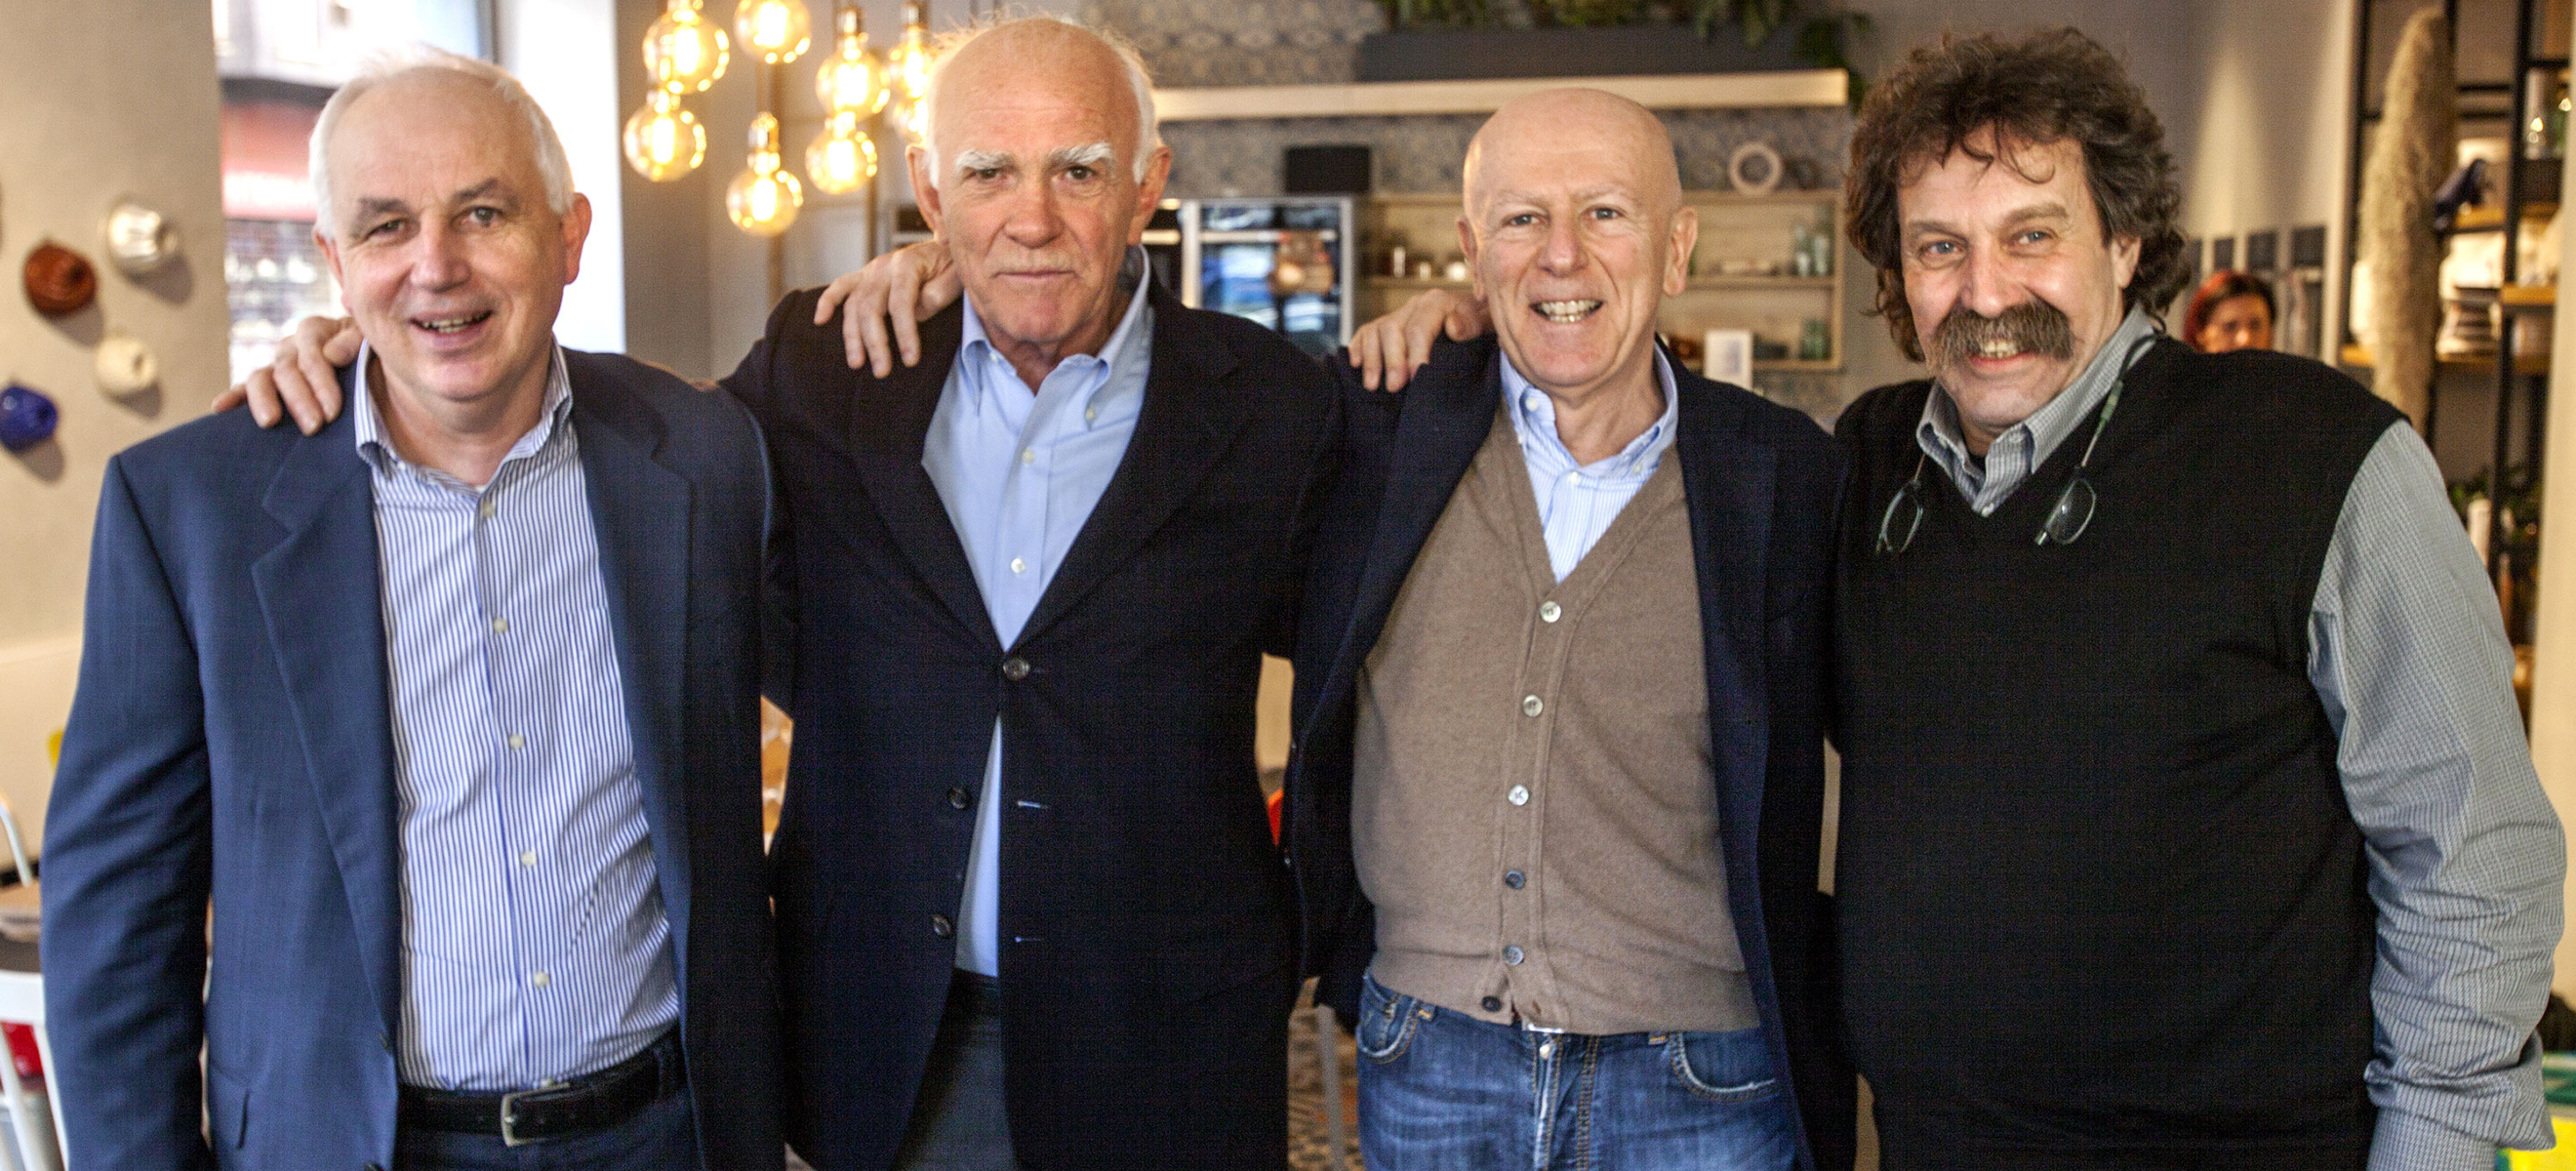 Die »vier Musketiere«: Bruno Pilzer, Vittorio Capovilla, Guido Fini Zarri und Mario Pojer